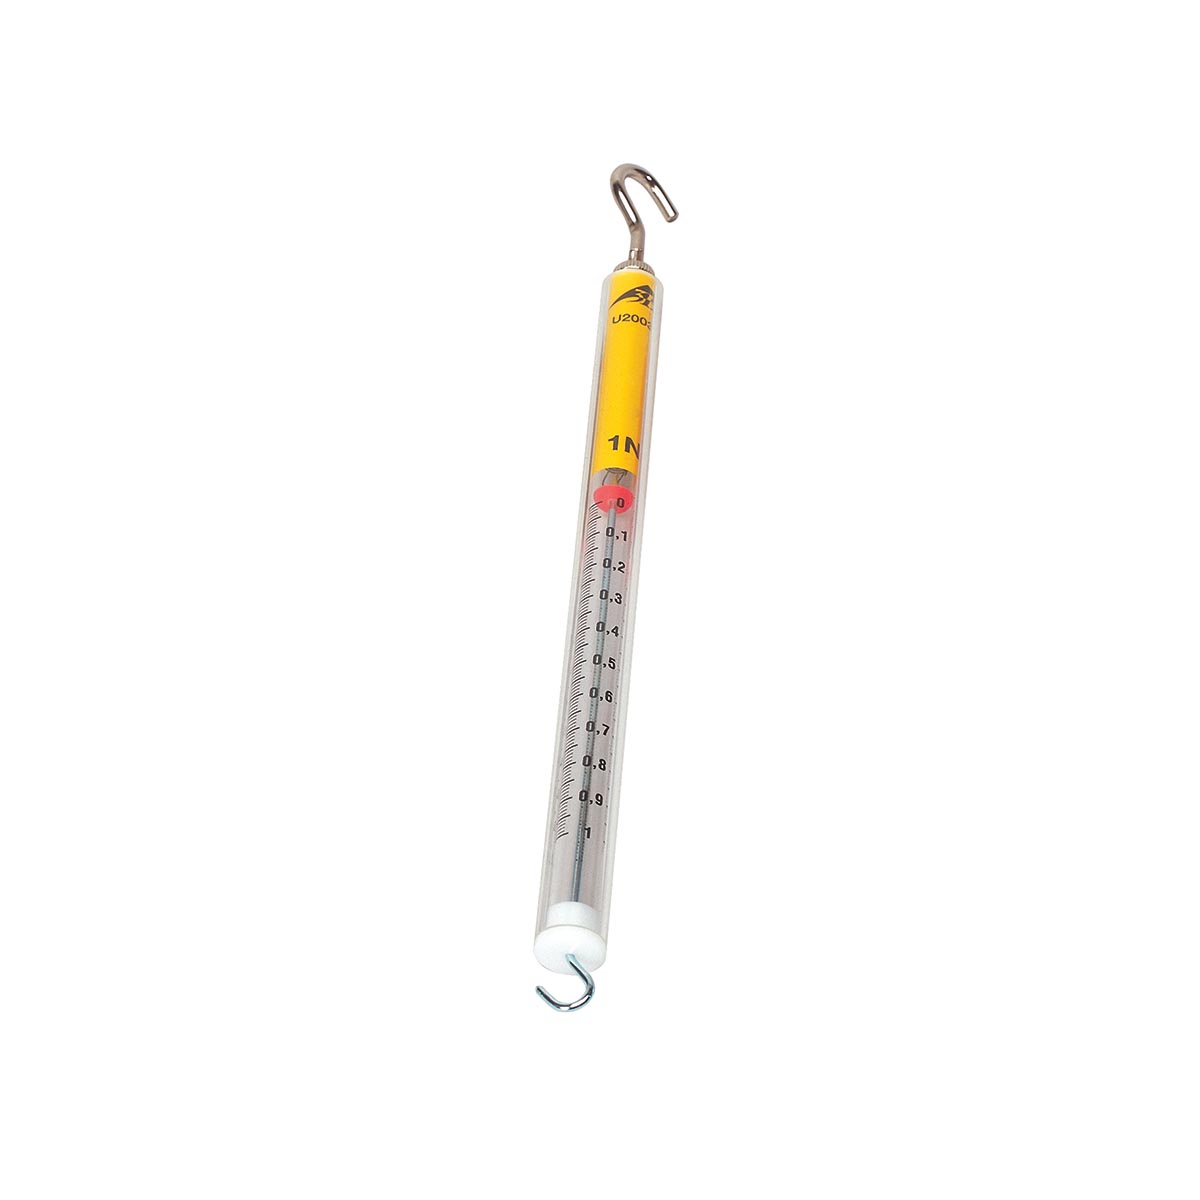 Präzisionsdynamometer/Kraftmesser farbcodiert mit Nullpunktkalibrierung 0.1 N 